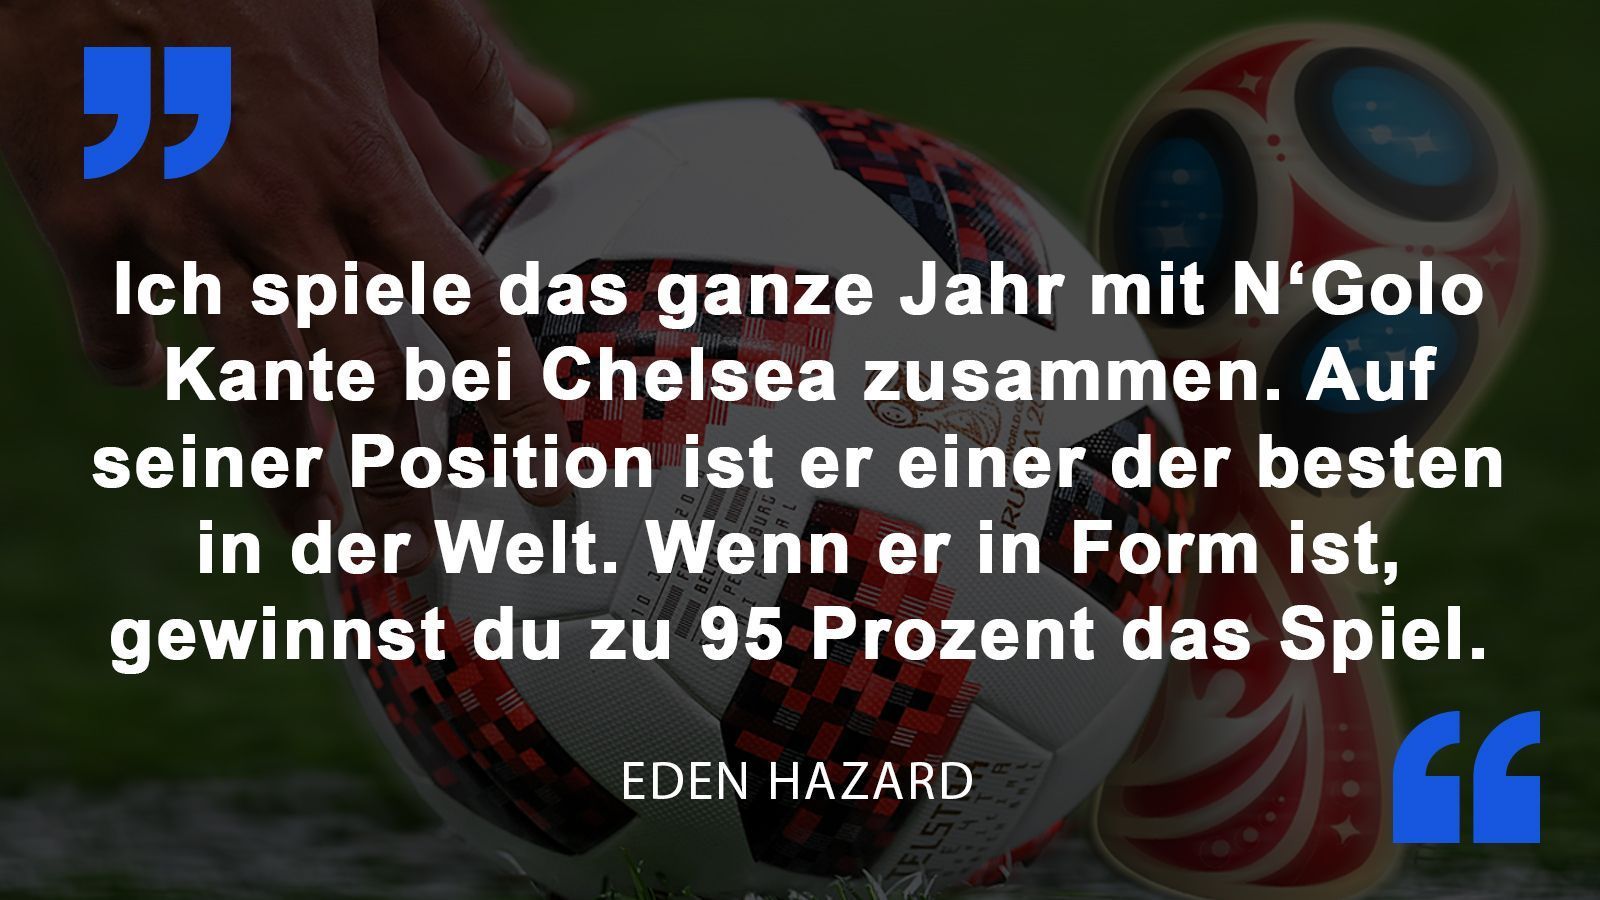 
                <strong>Eden Hazard</strong><br>
                Eden Hazard vor dem Halbfinal-Spiel gegen Frankreich um seinen Chelsea-Kollegen N'Golo Kante.
              